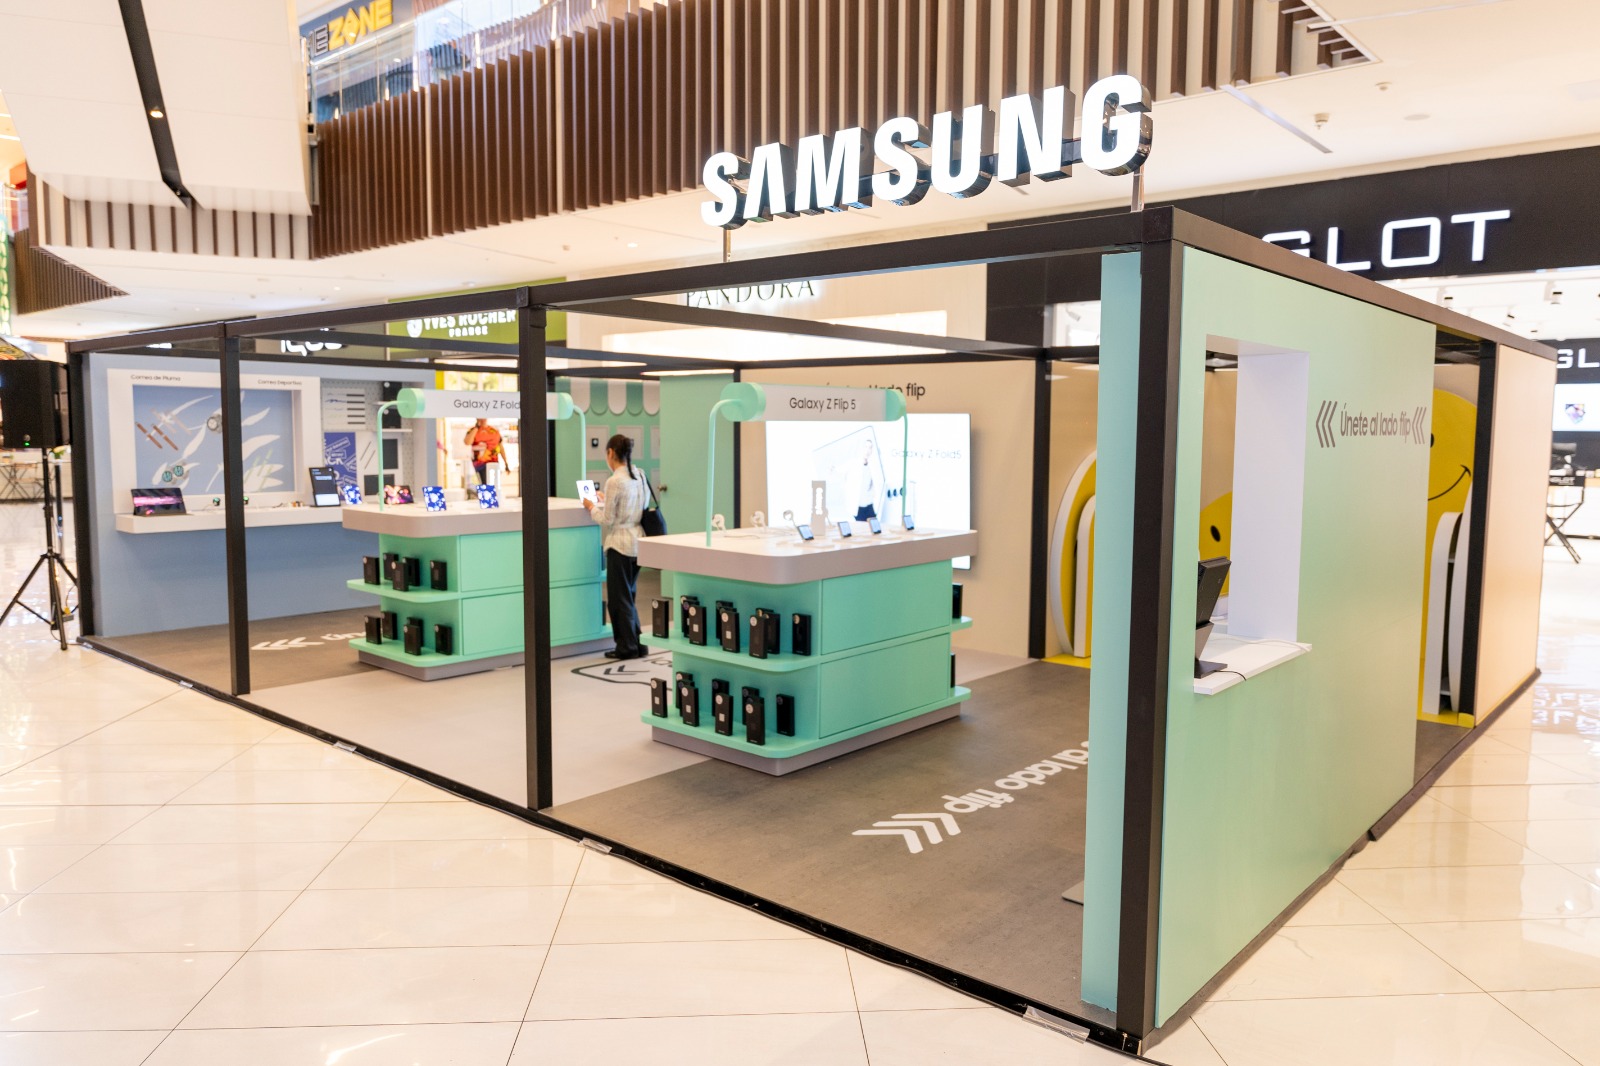 Samsung ofrece una experiencia de compra innovadora con su nueva tienda Pop Up